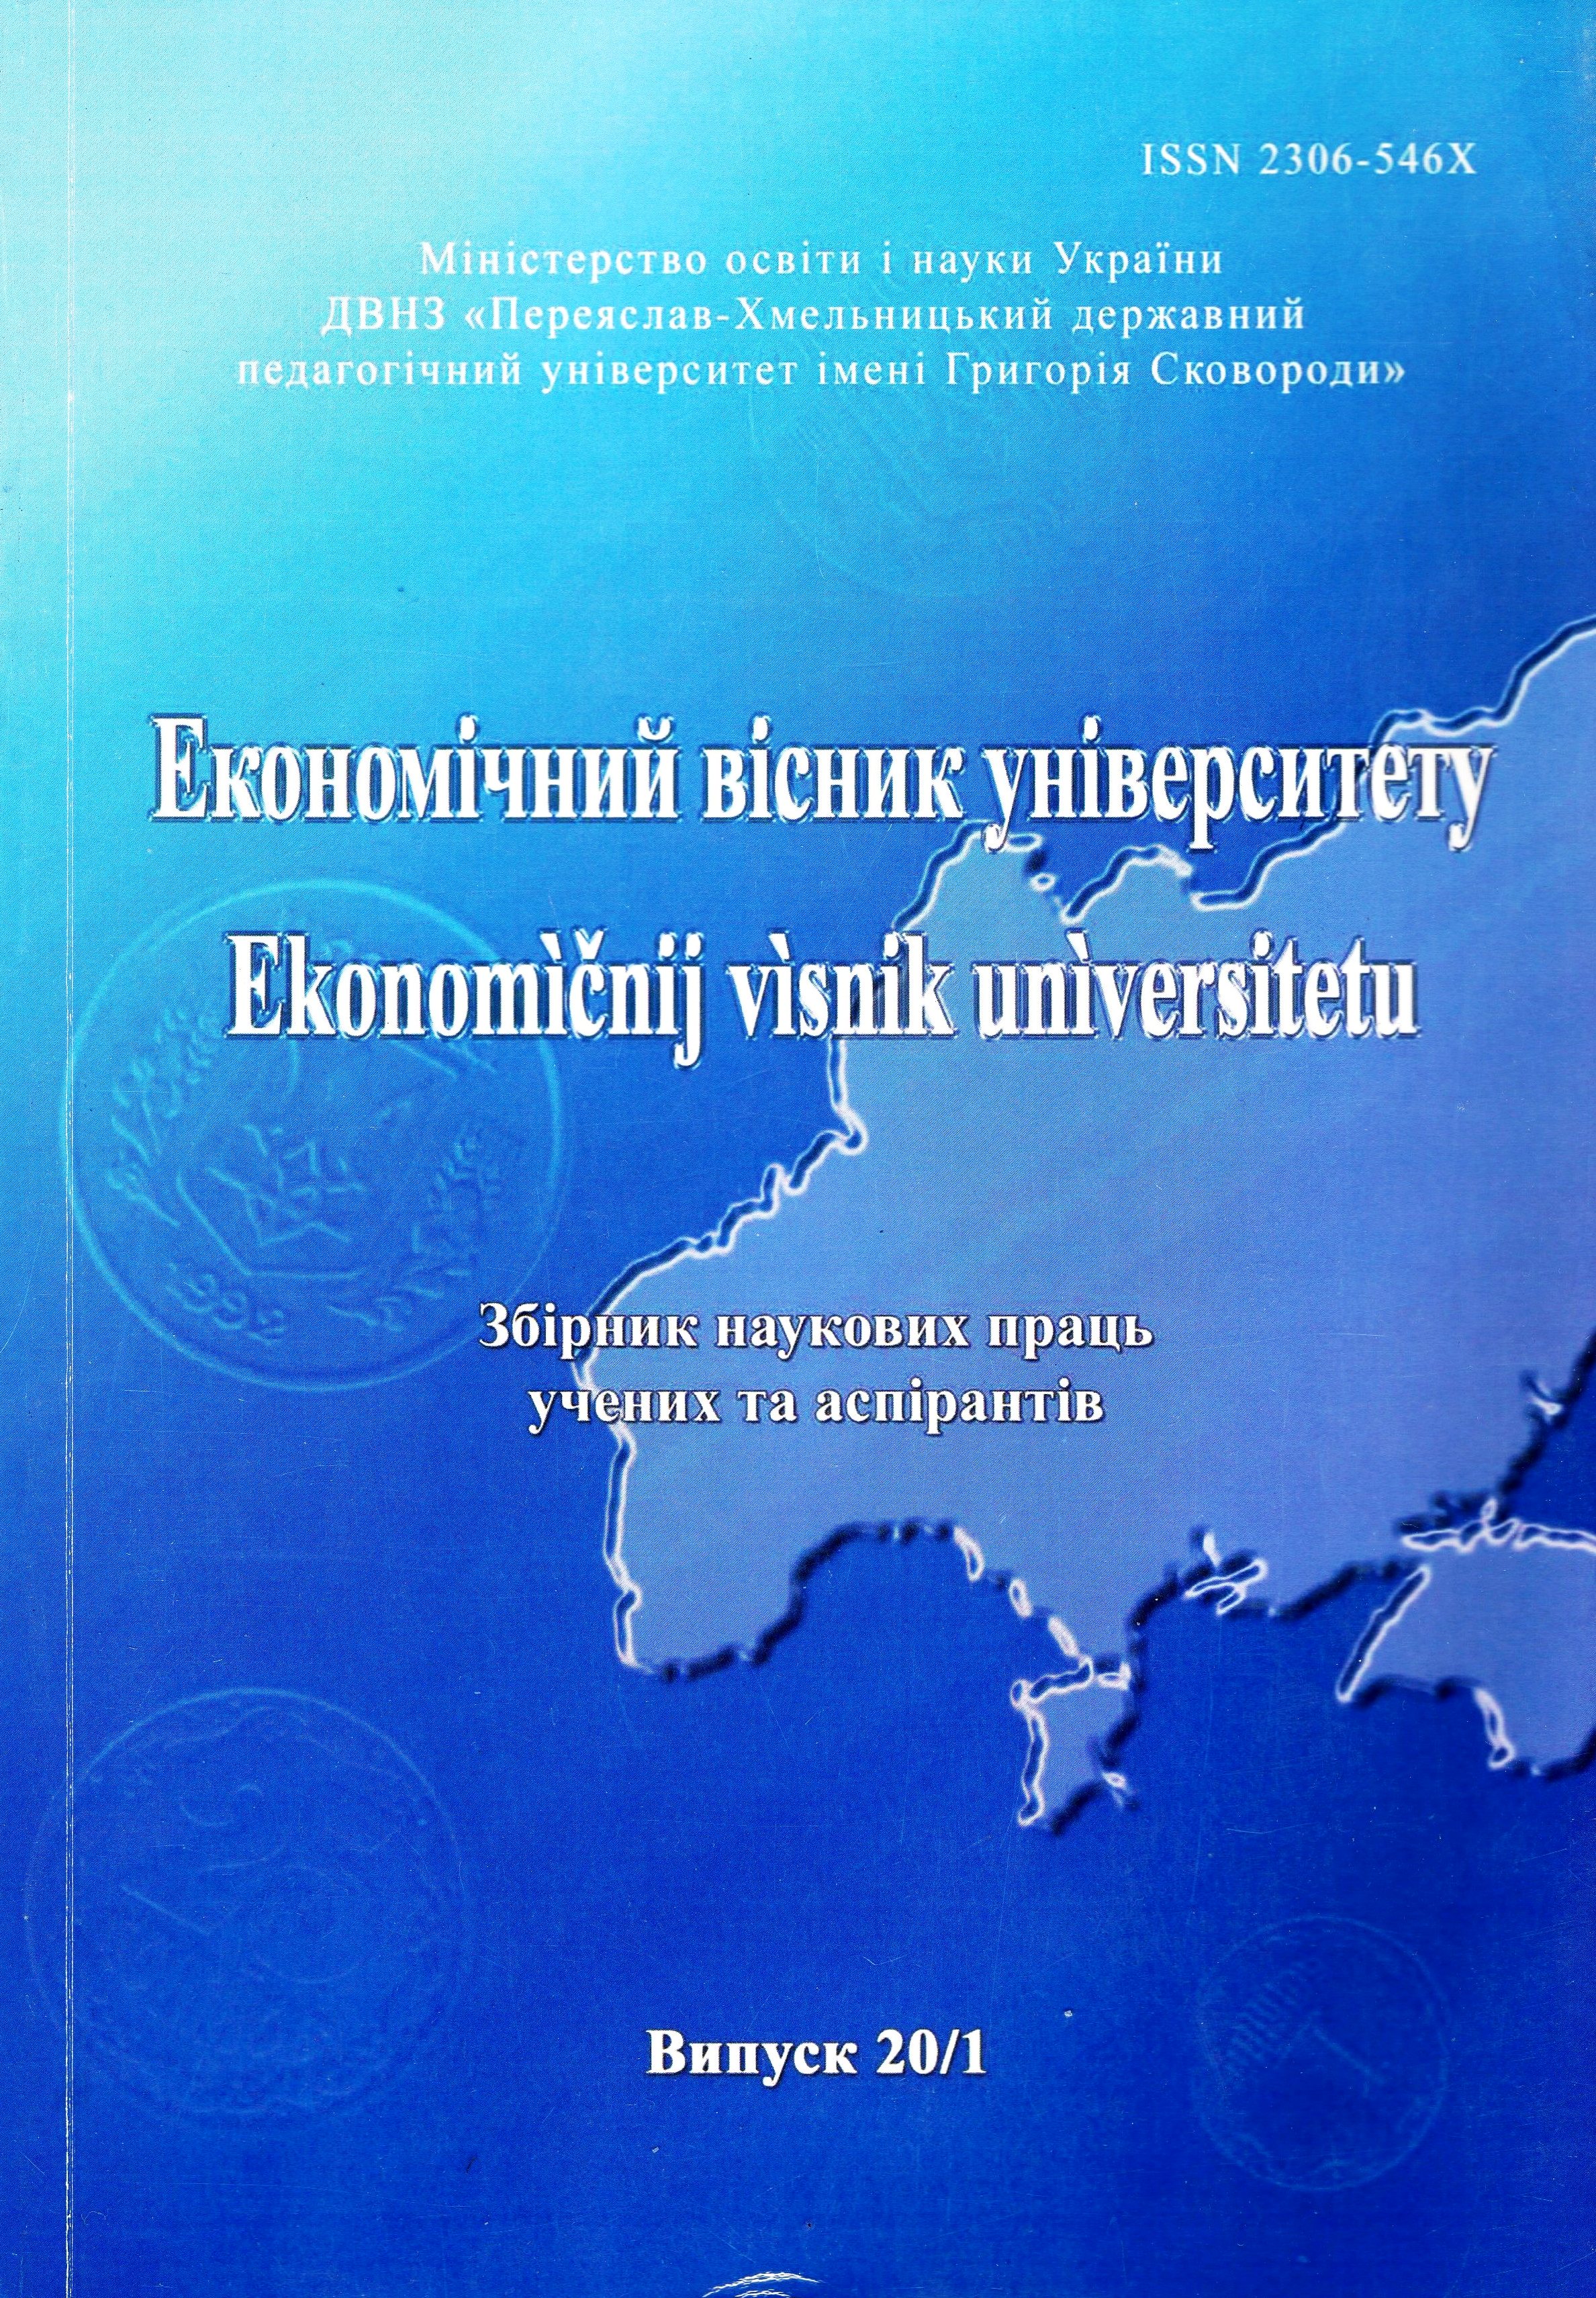 Євроінтеграційні наміри України: частково порівняльний аналіз